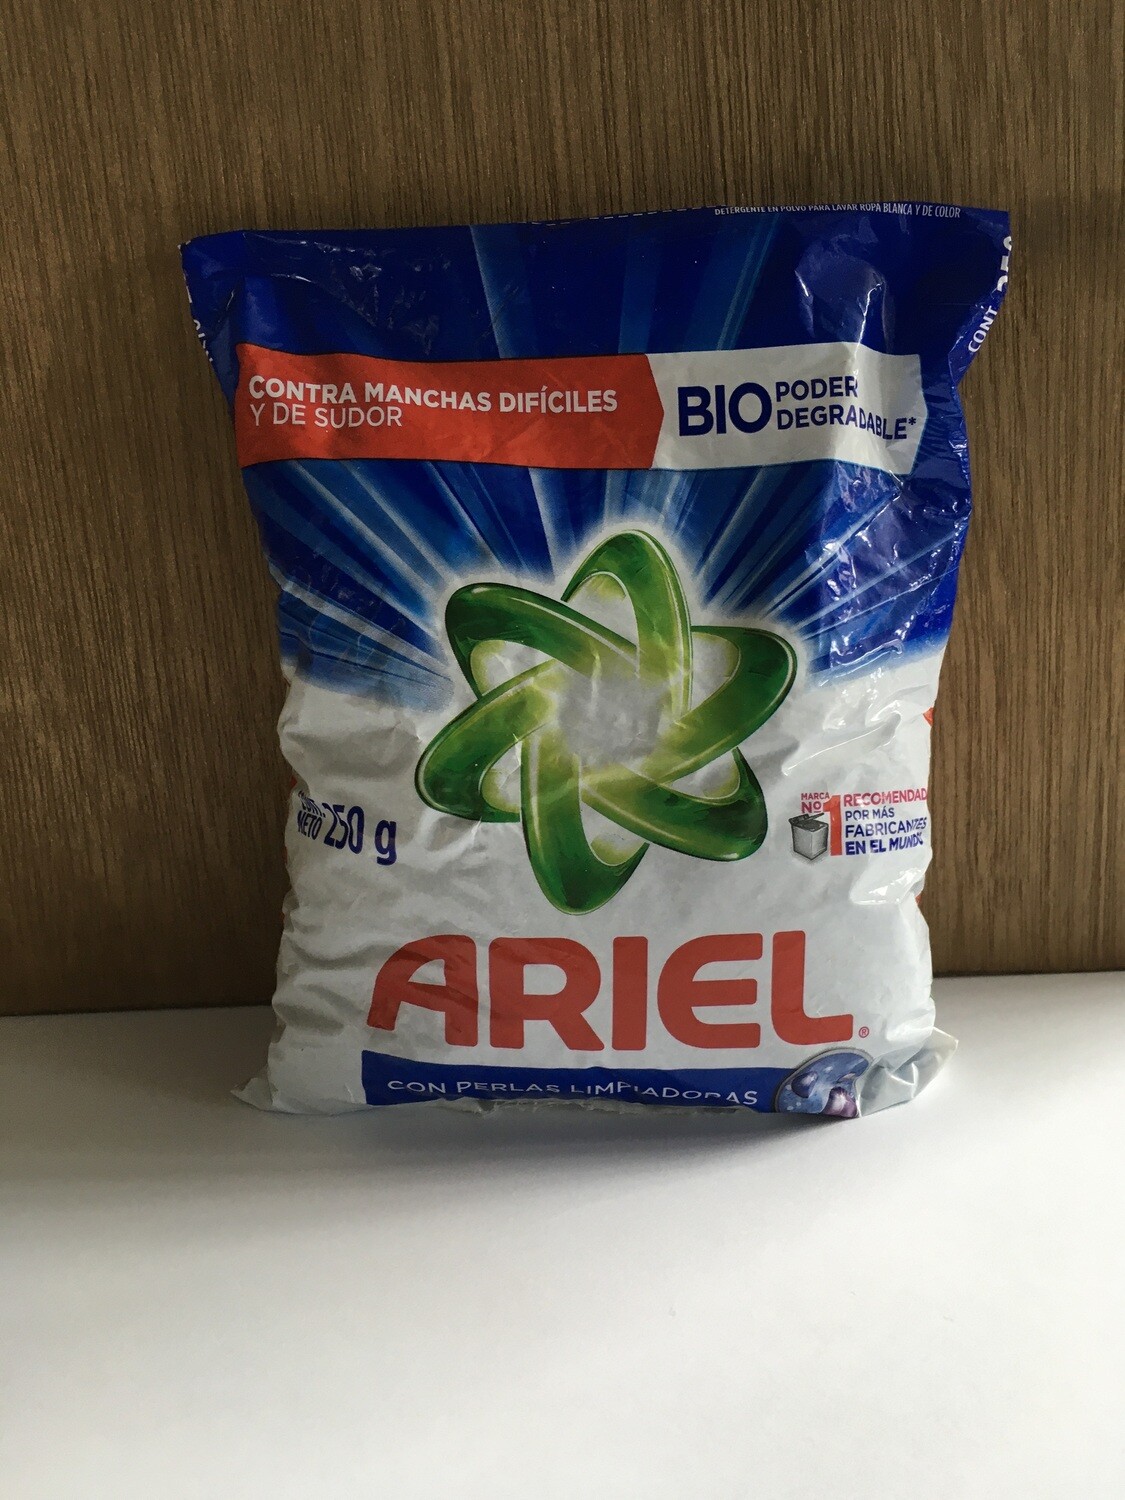 Household / Detergents / Ariel Detergent, 250g